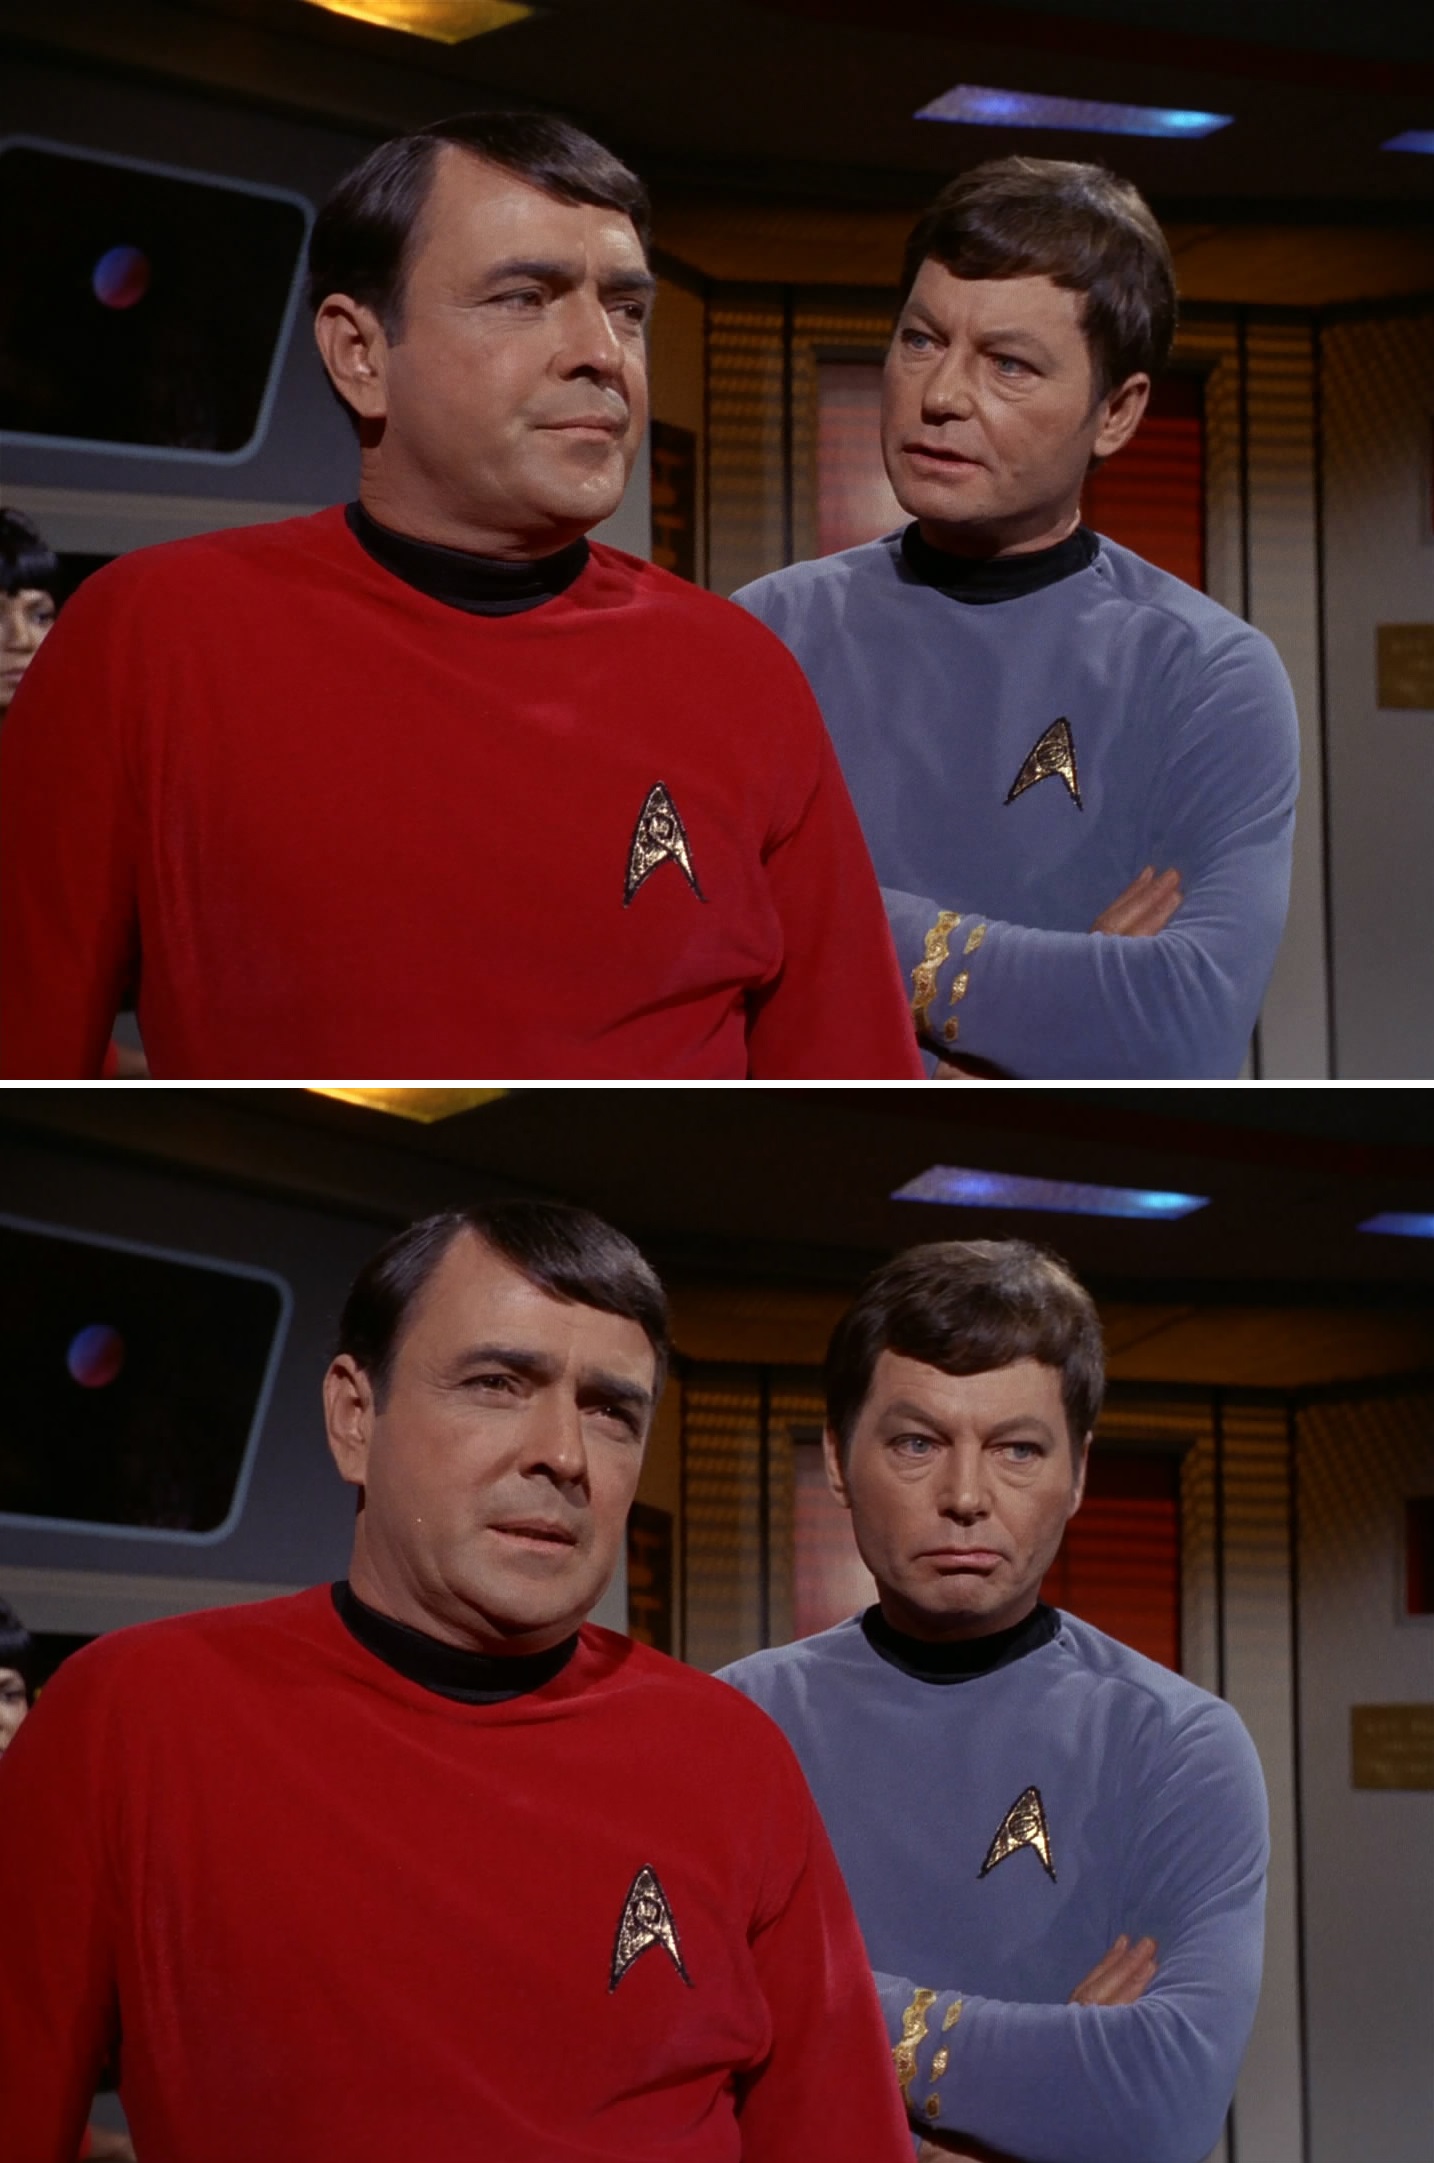 Scotty McCoy Star Trek 01 Blank Meme Template